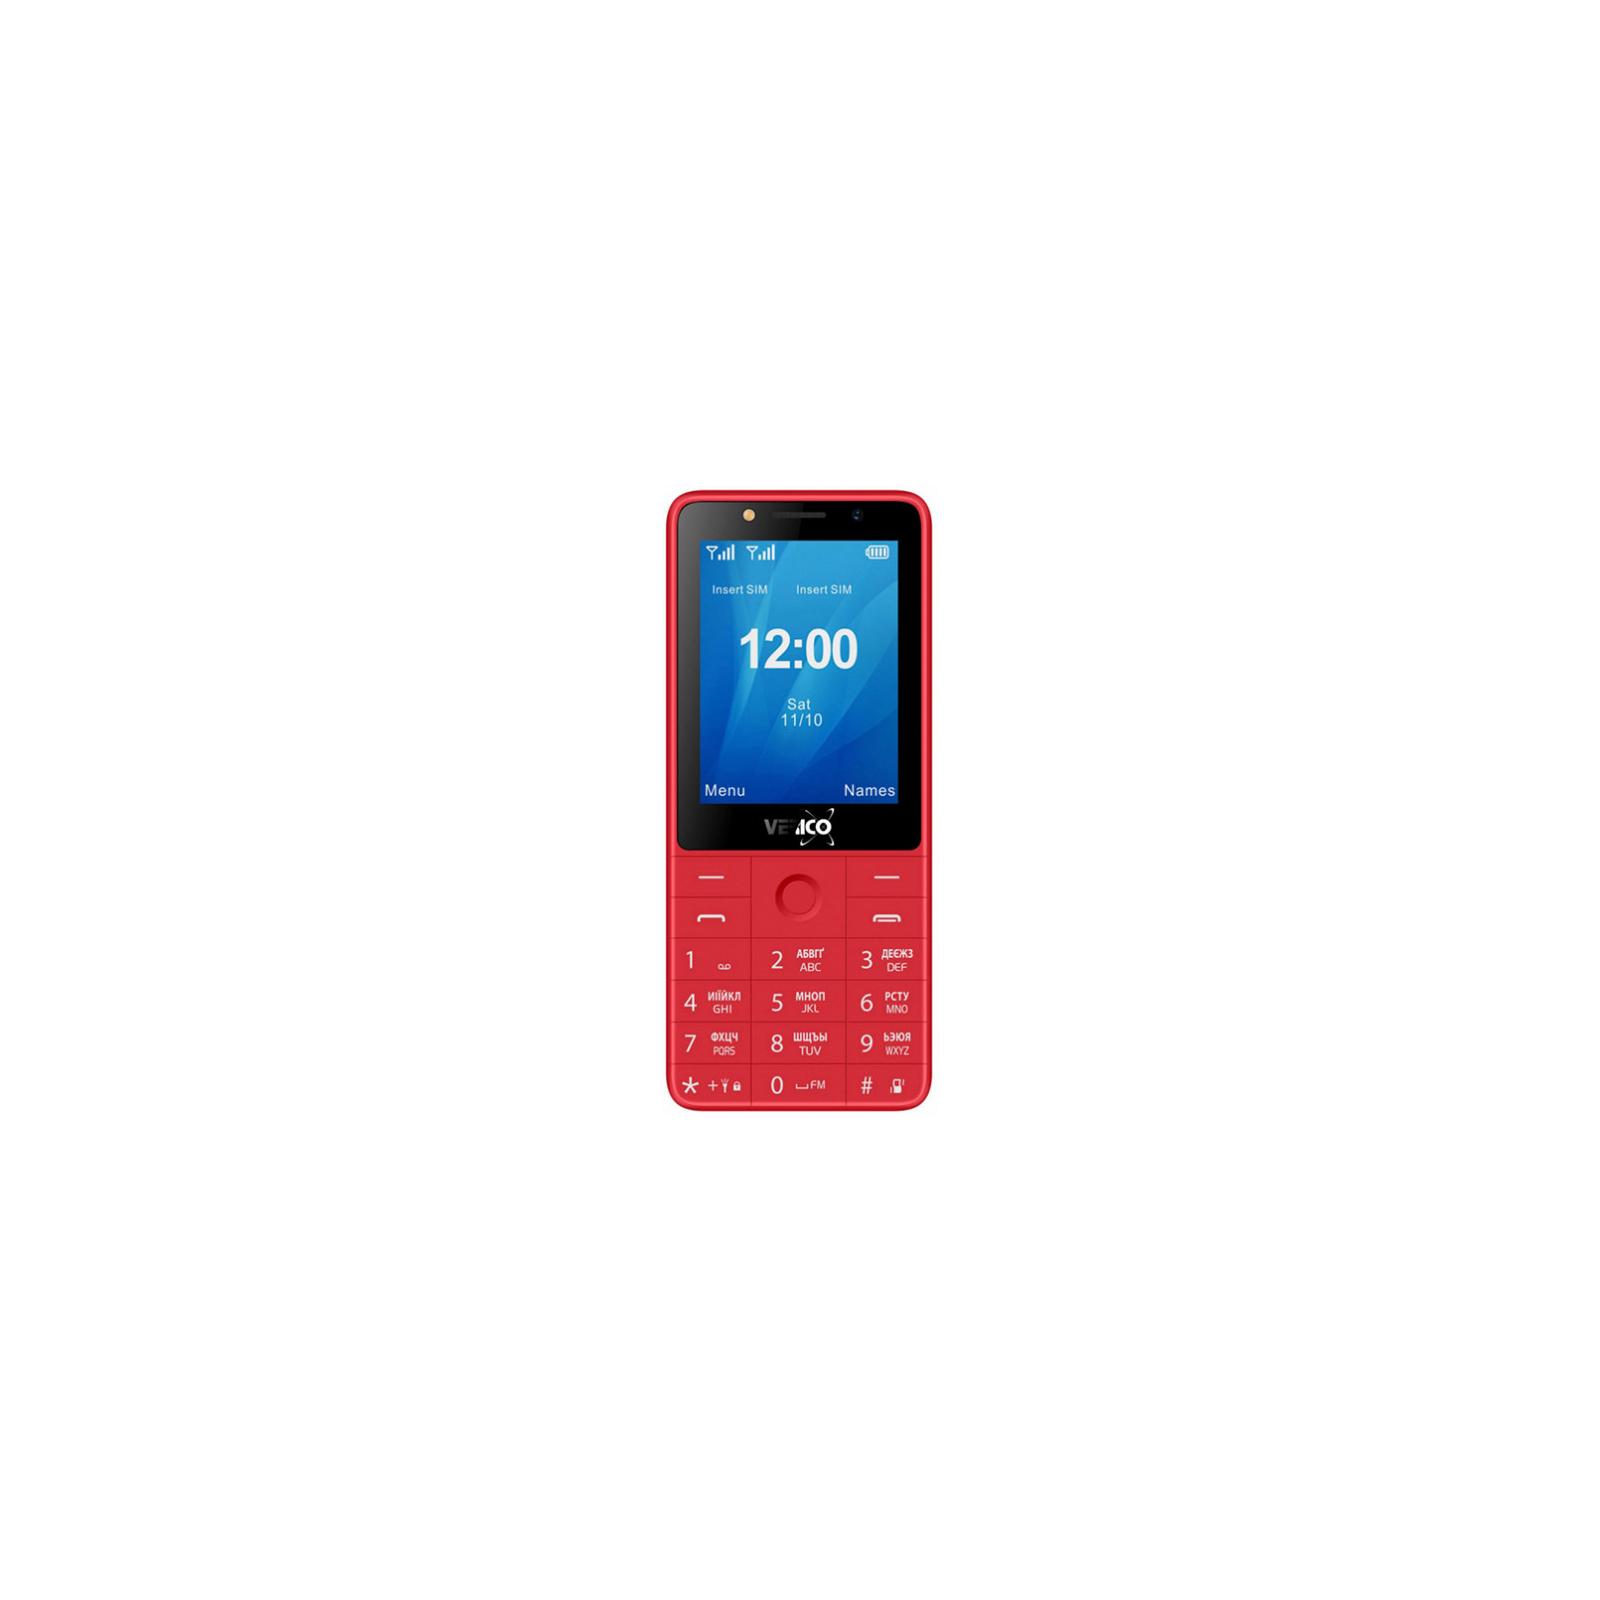 Мобильный телефон Verico Qin S282 Gold (4713095606762)